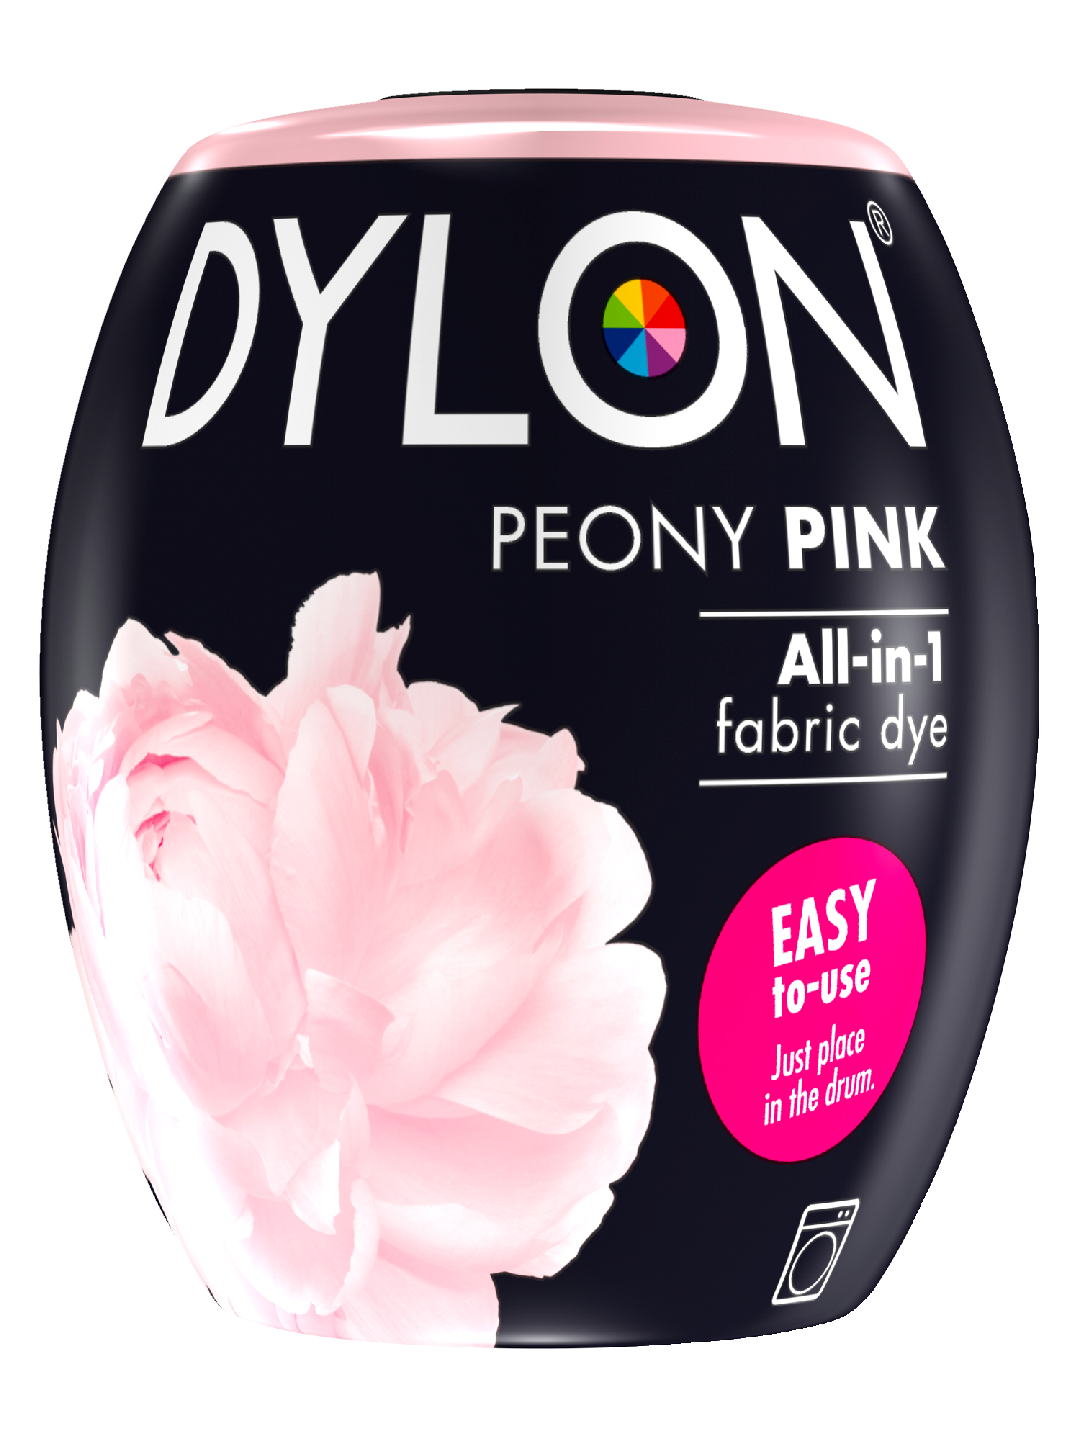 Dylon 350g Peony Pink 07 tekstiiliväri